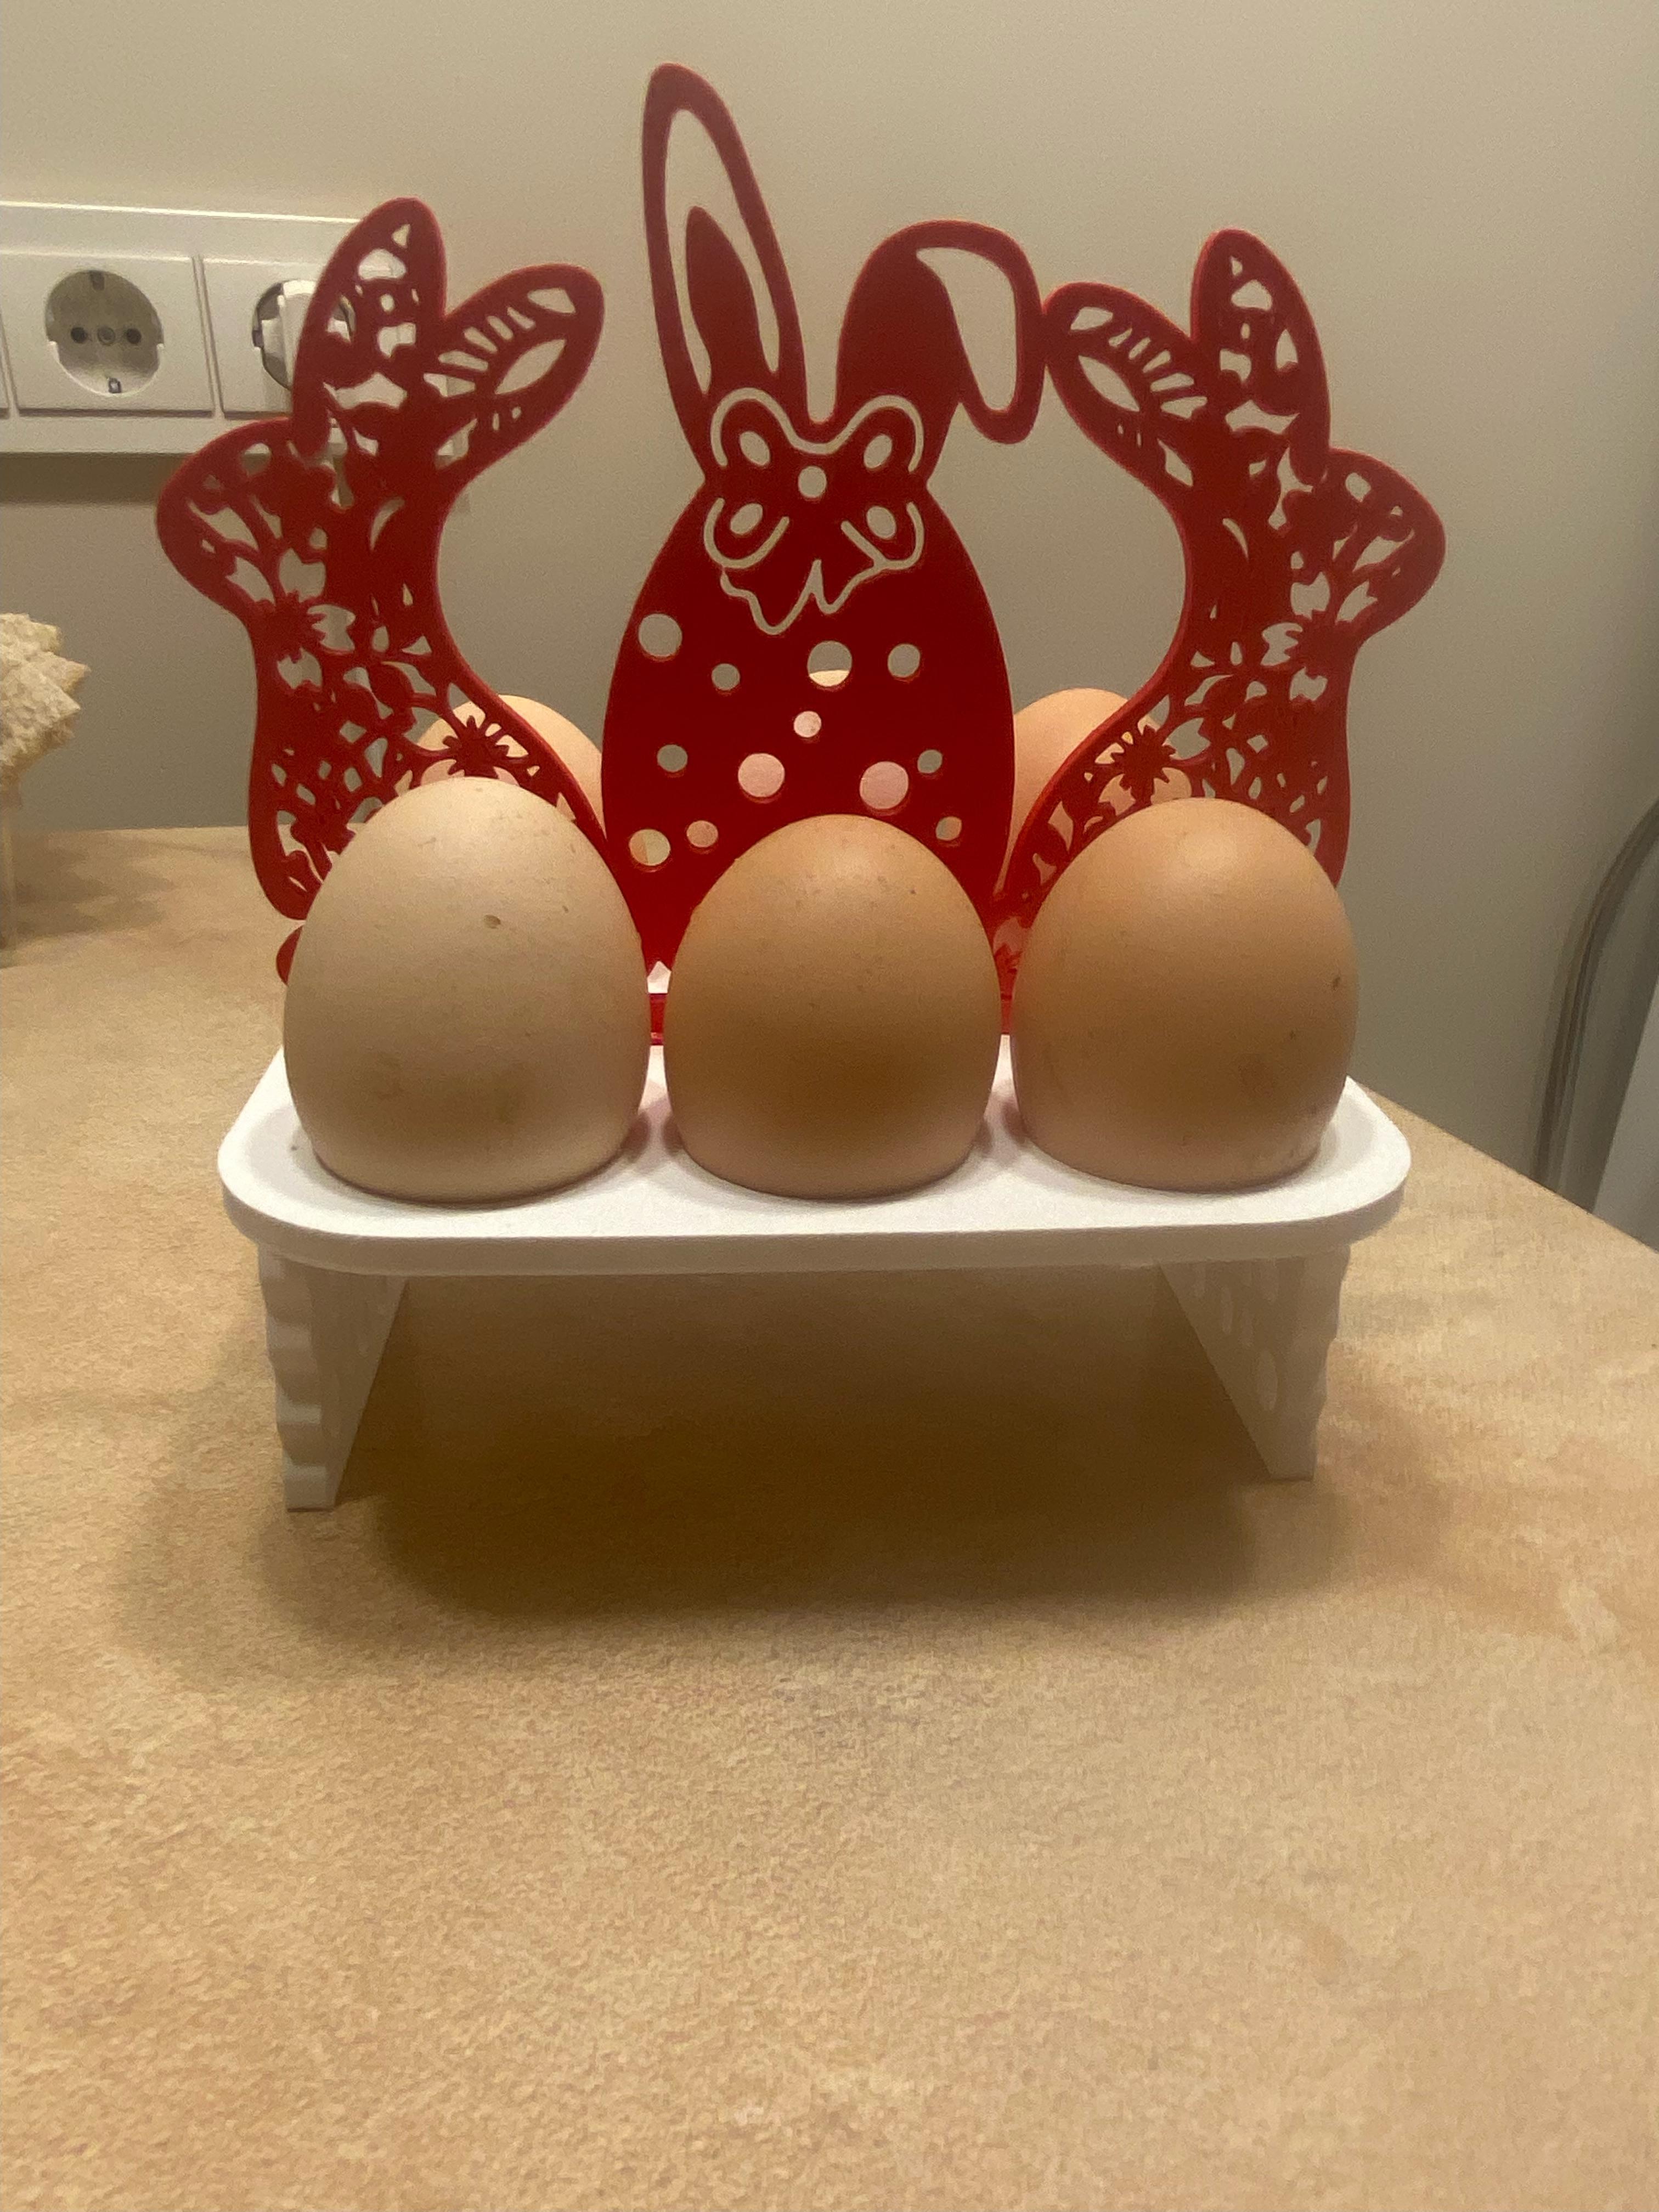  Easter egg holder with bunny decoration 3d model